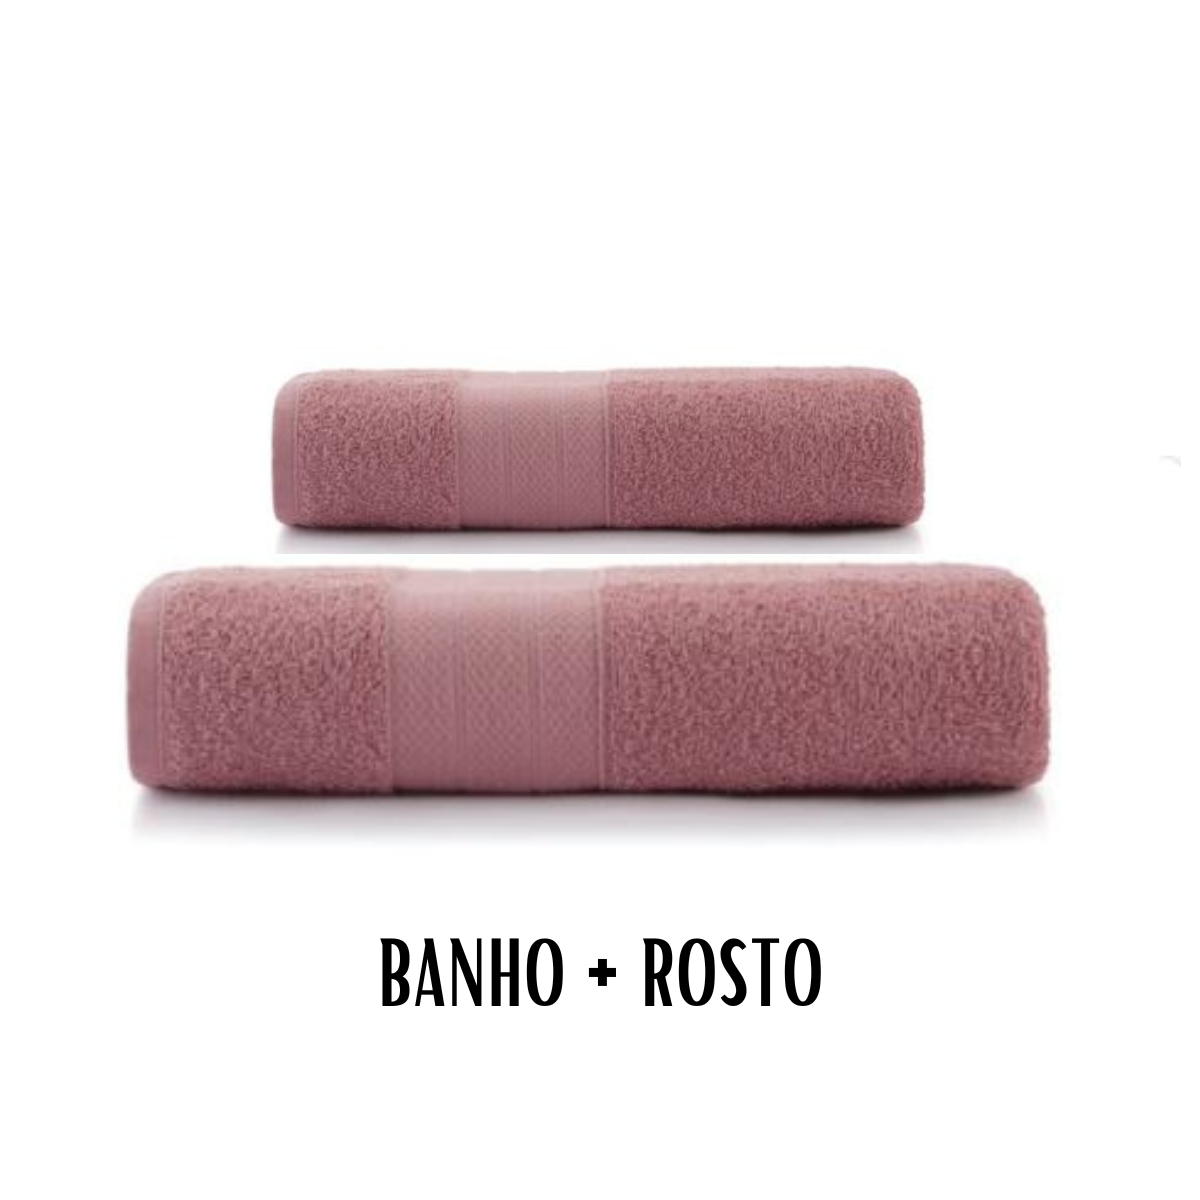 Kit Toalha de Banho + Rosto Altenburg Toquio 2 Pcs:roxo Melhow